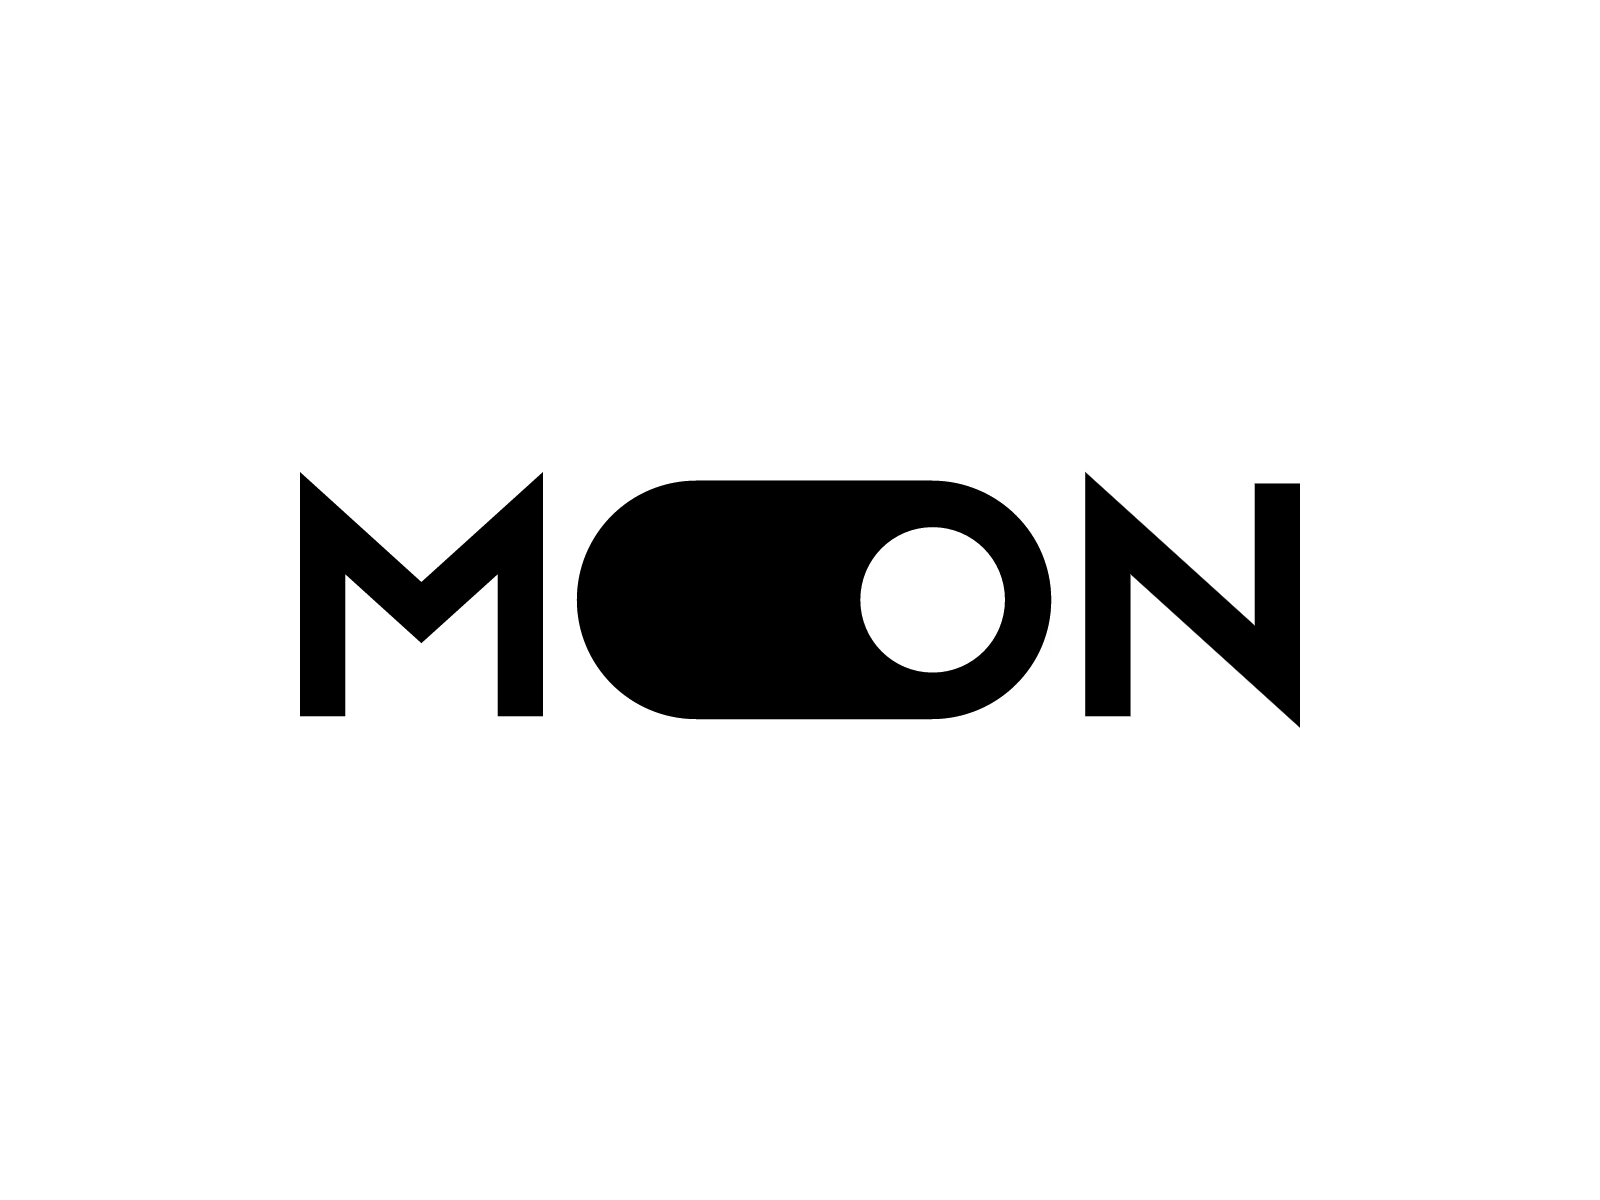 The Moon Studio